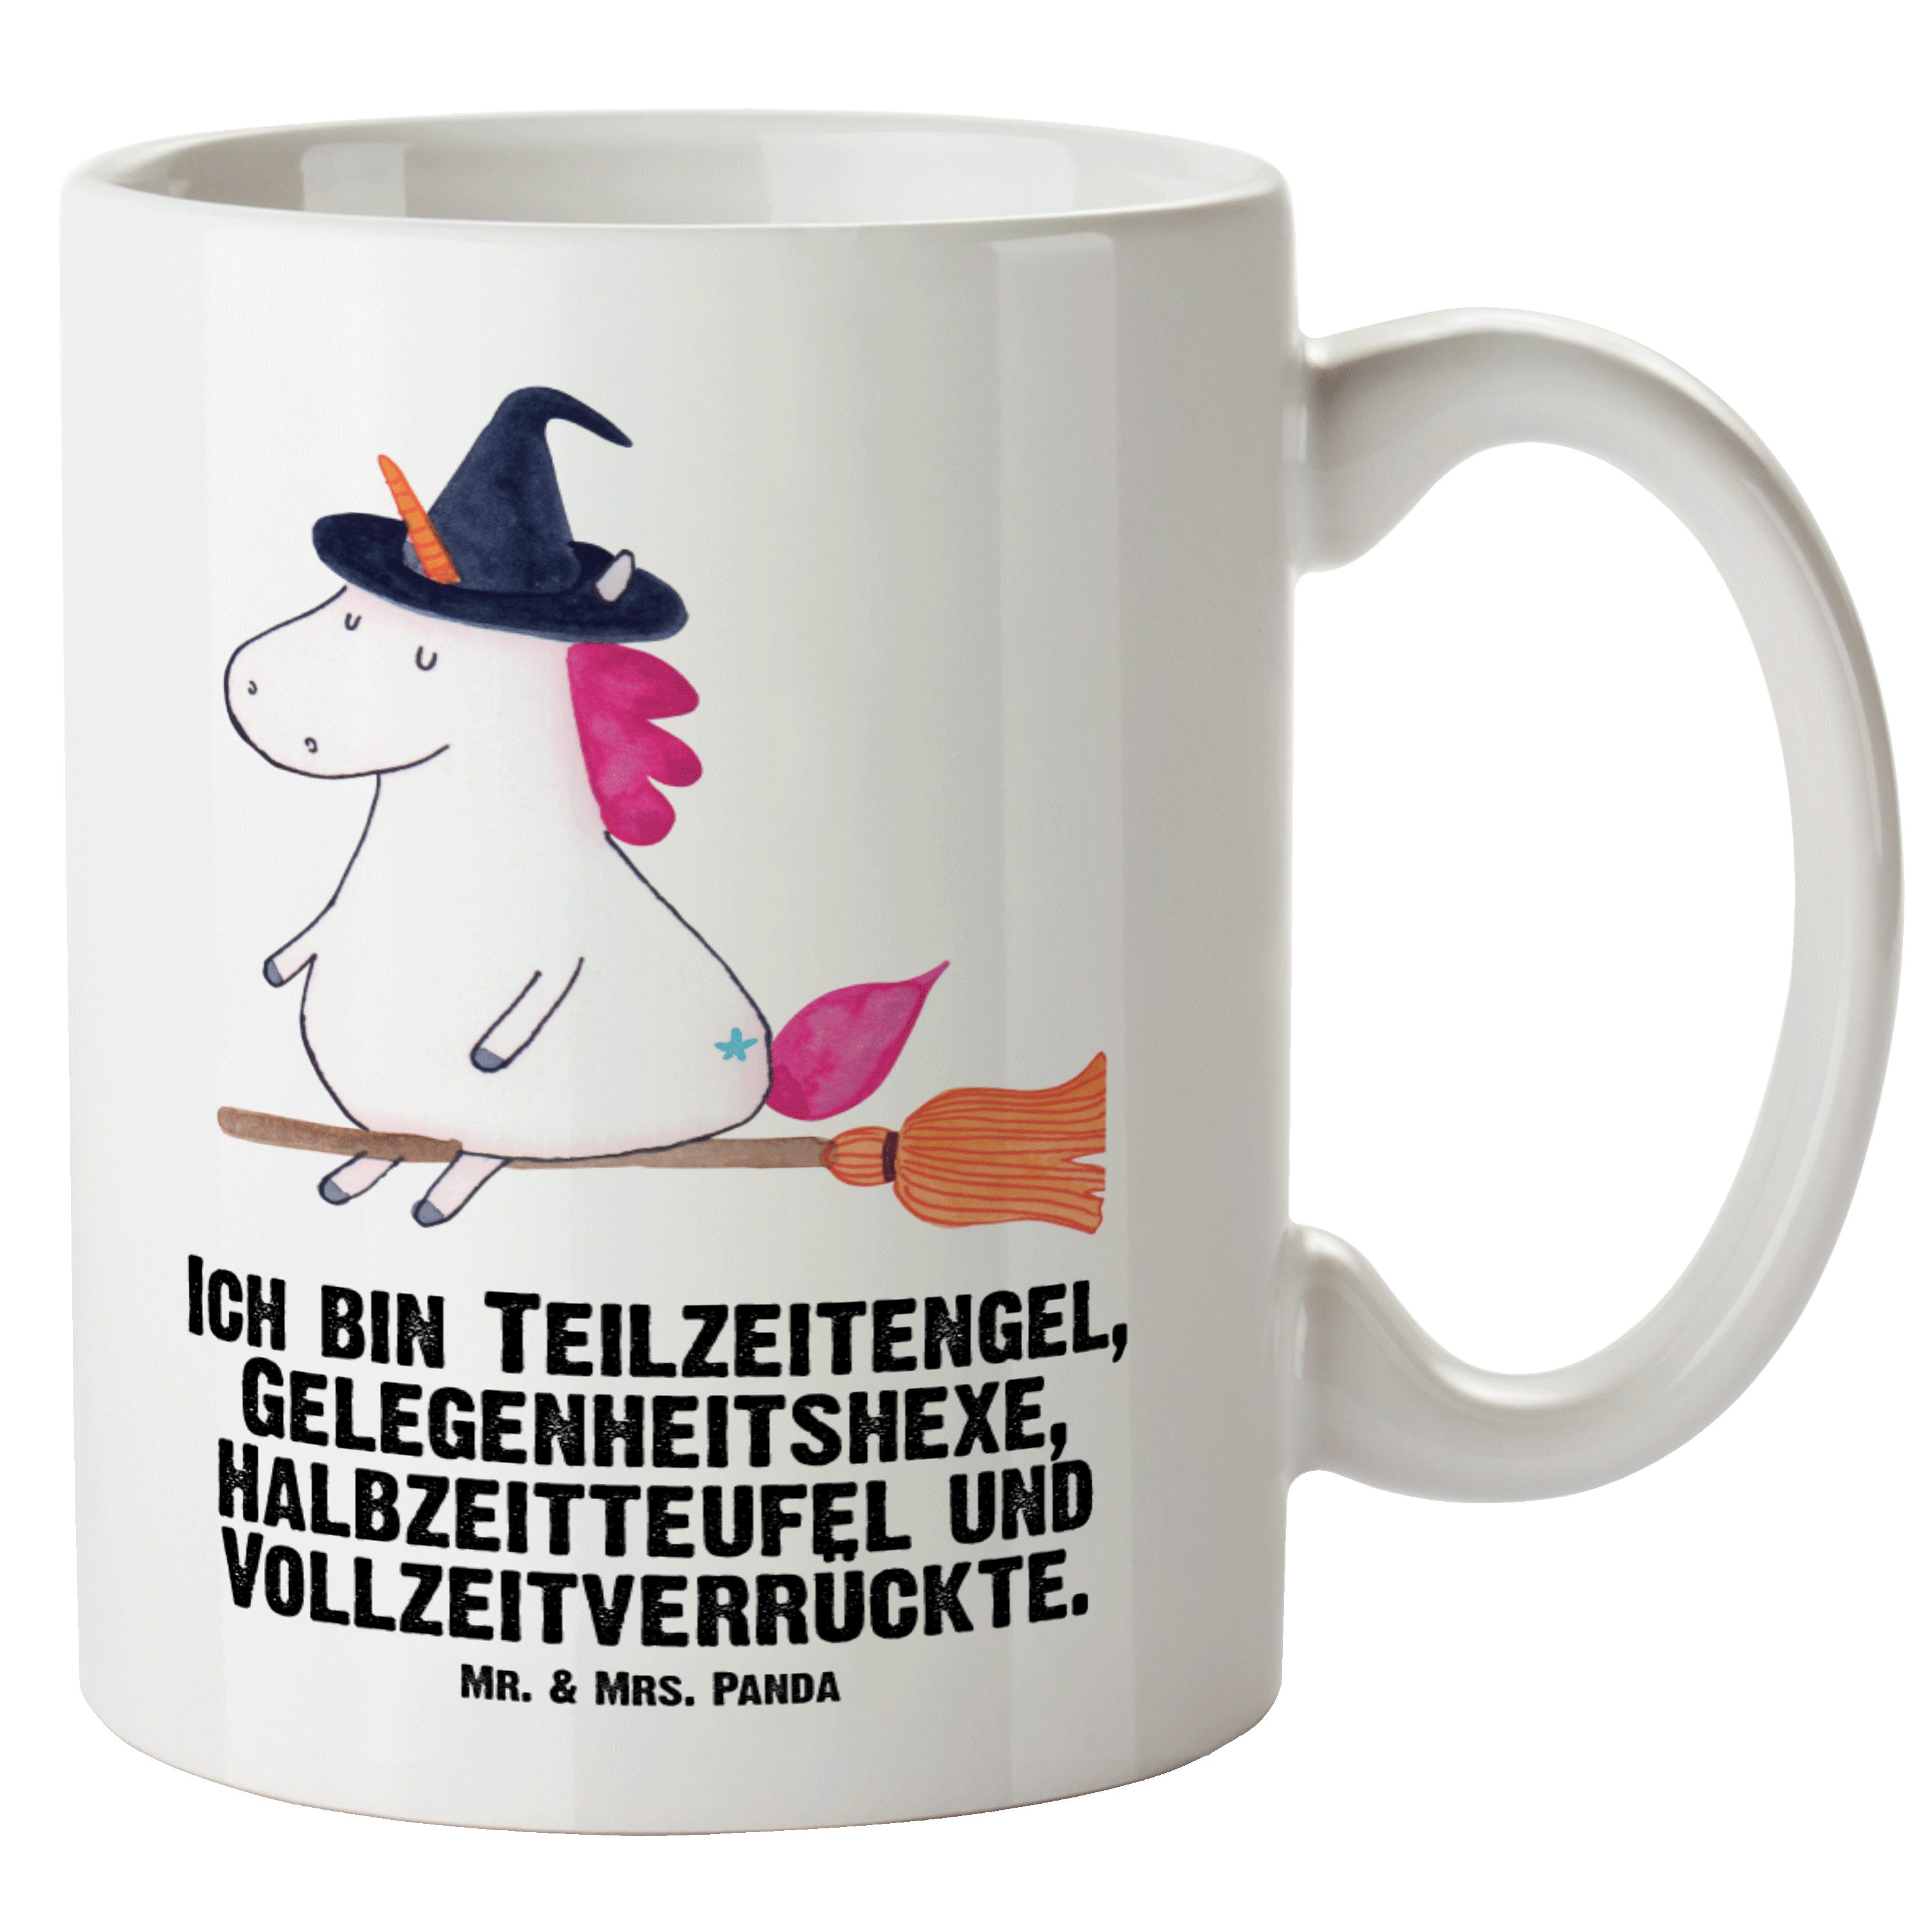 Mr. & Mrs. Panda Tasse Einhorn Hexe - Weiß - Geschenk, Verrückte, Groß, Unicorn, XL Tasse, L, XL Tasse Keramik